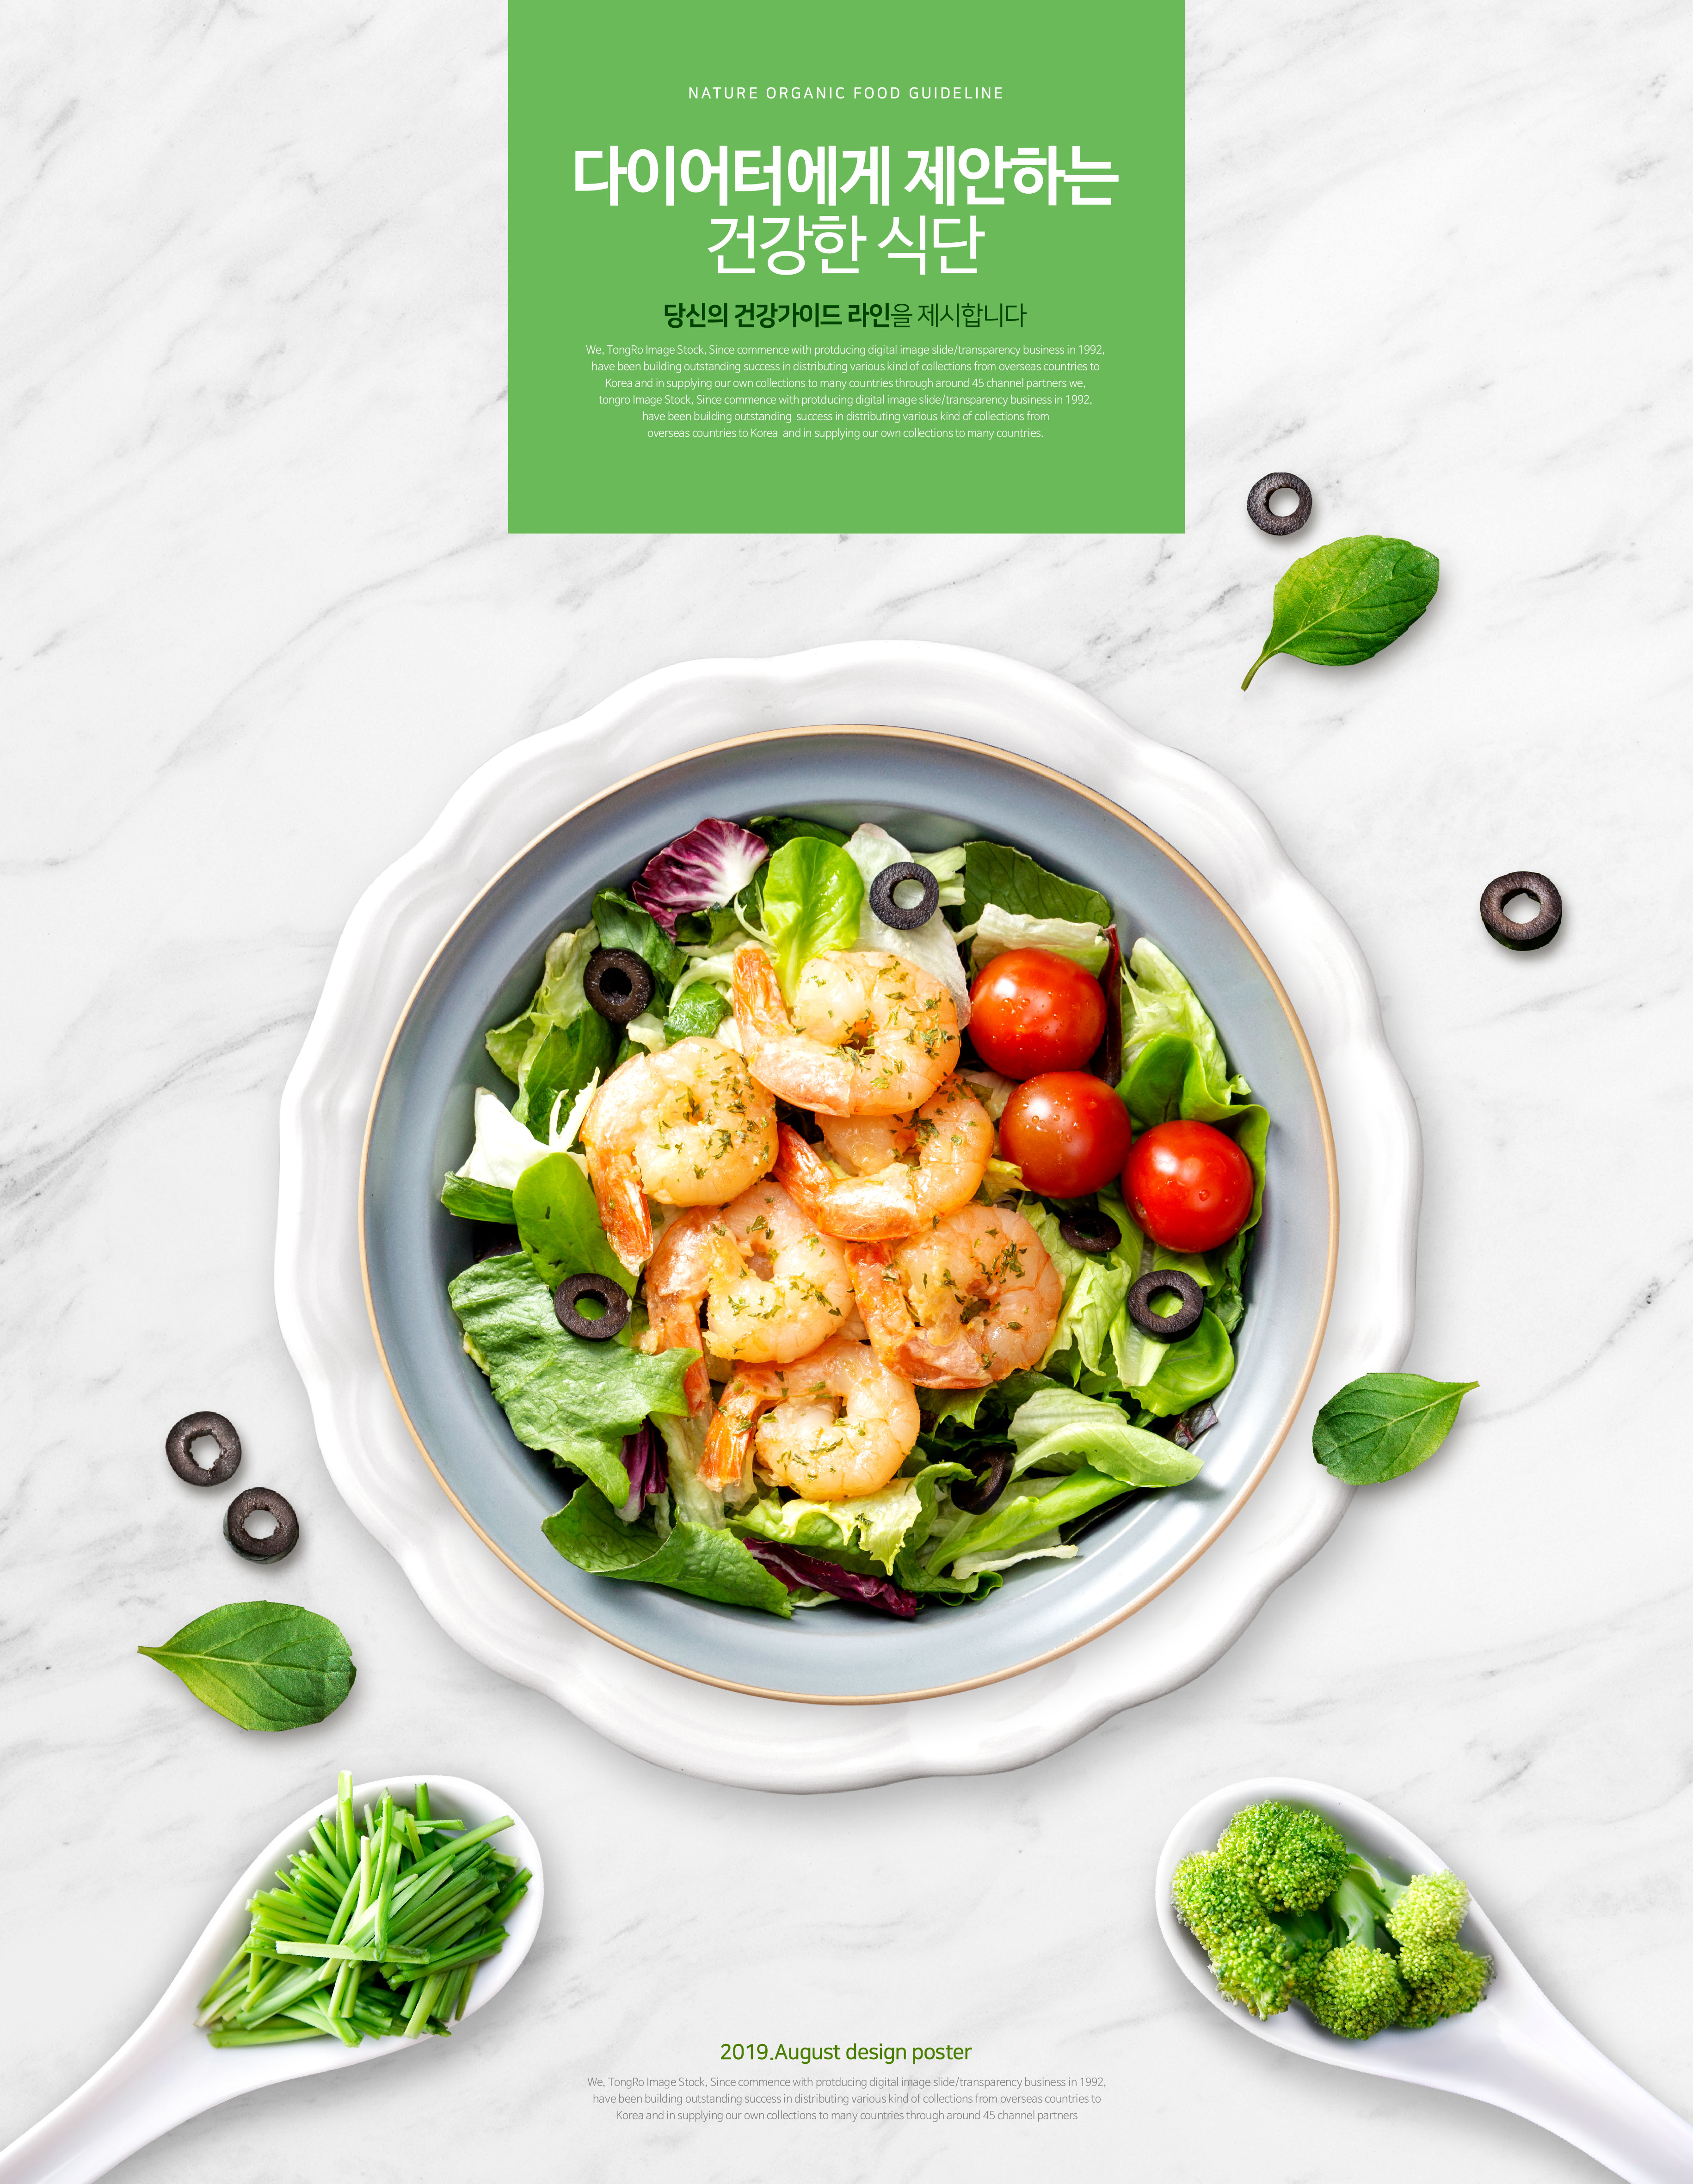 天然有机食品健康饮食食谱海报模板插图